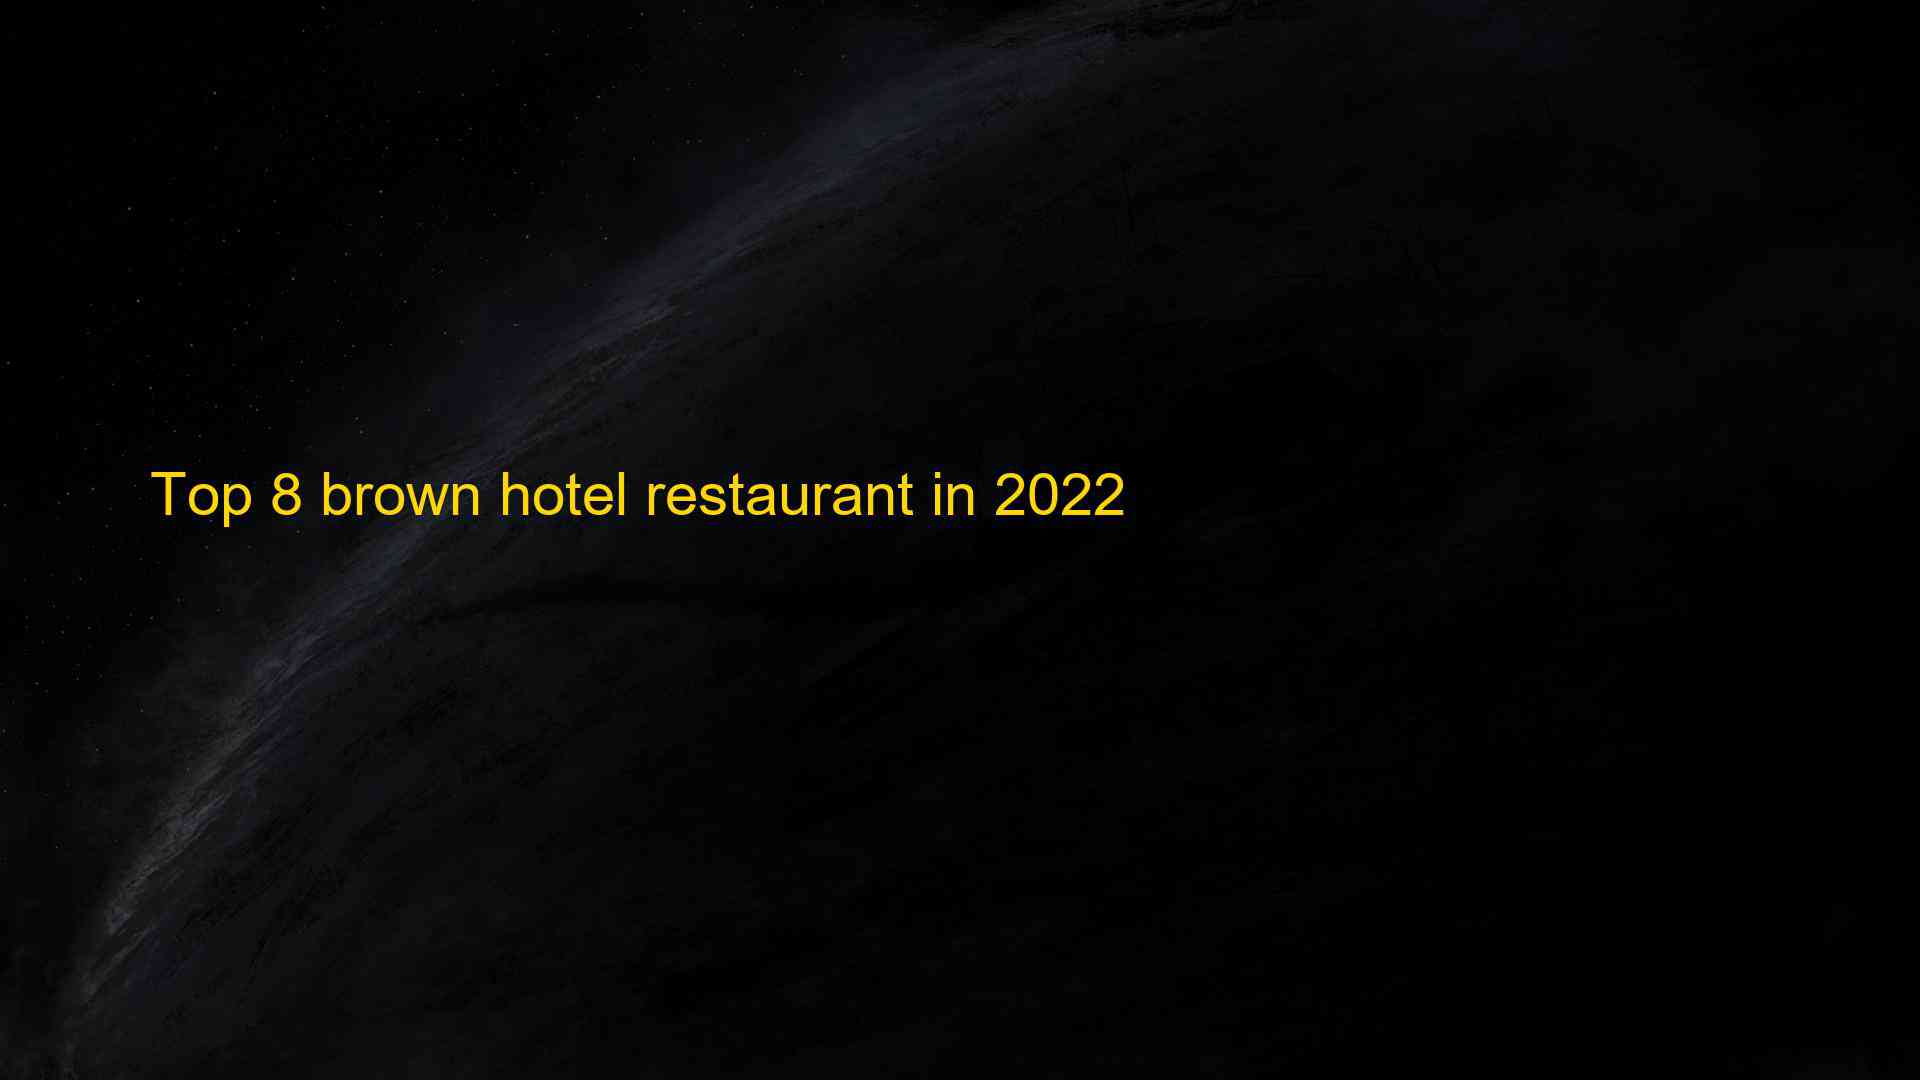 Top 8 brown hotel restaurant in 2022 1663177973